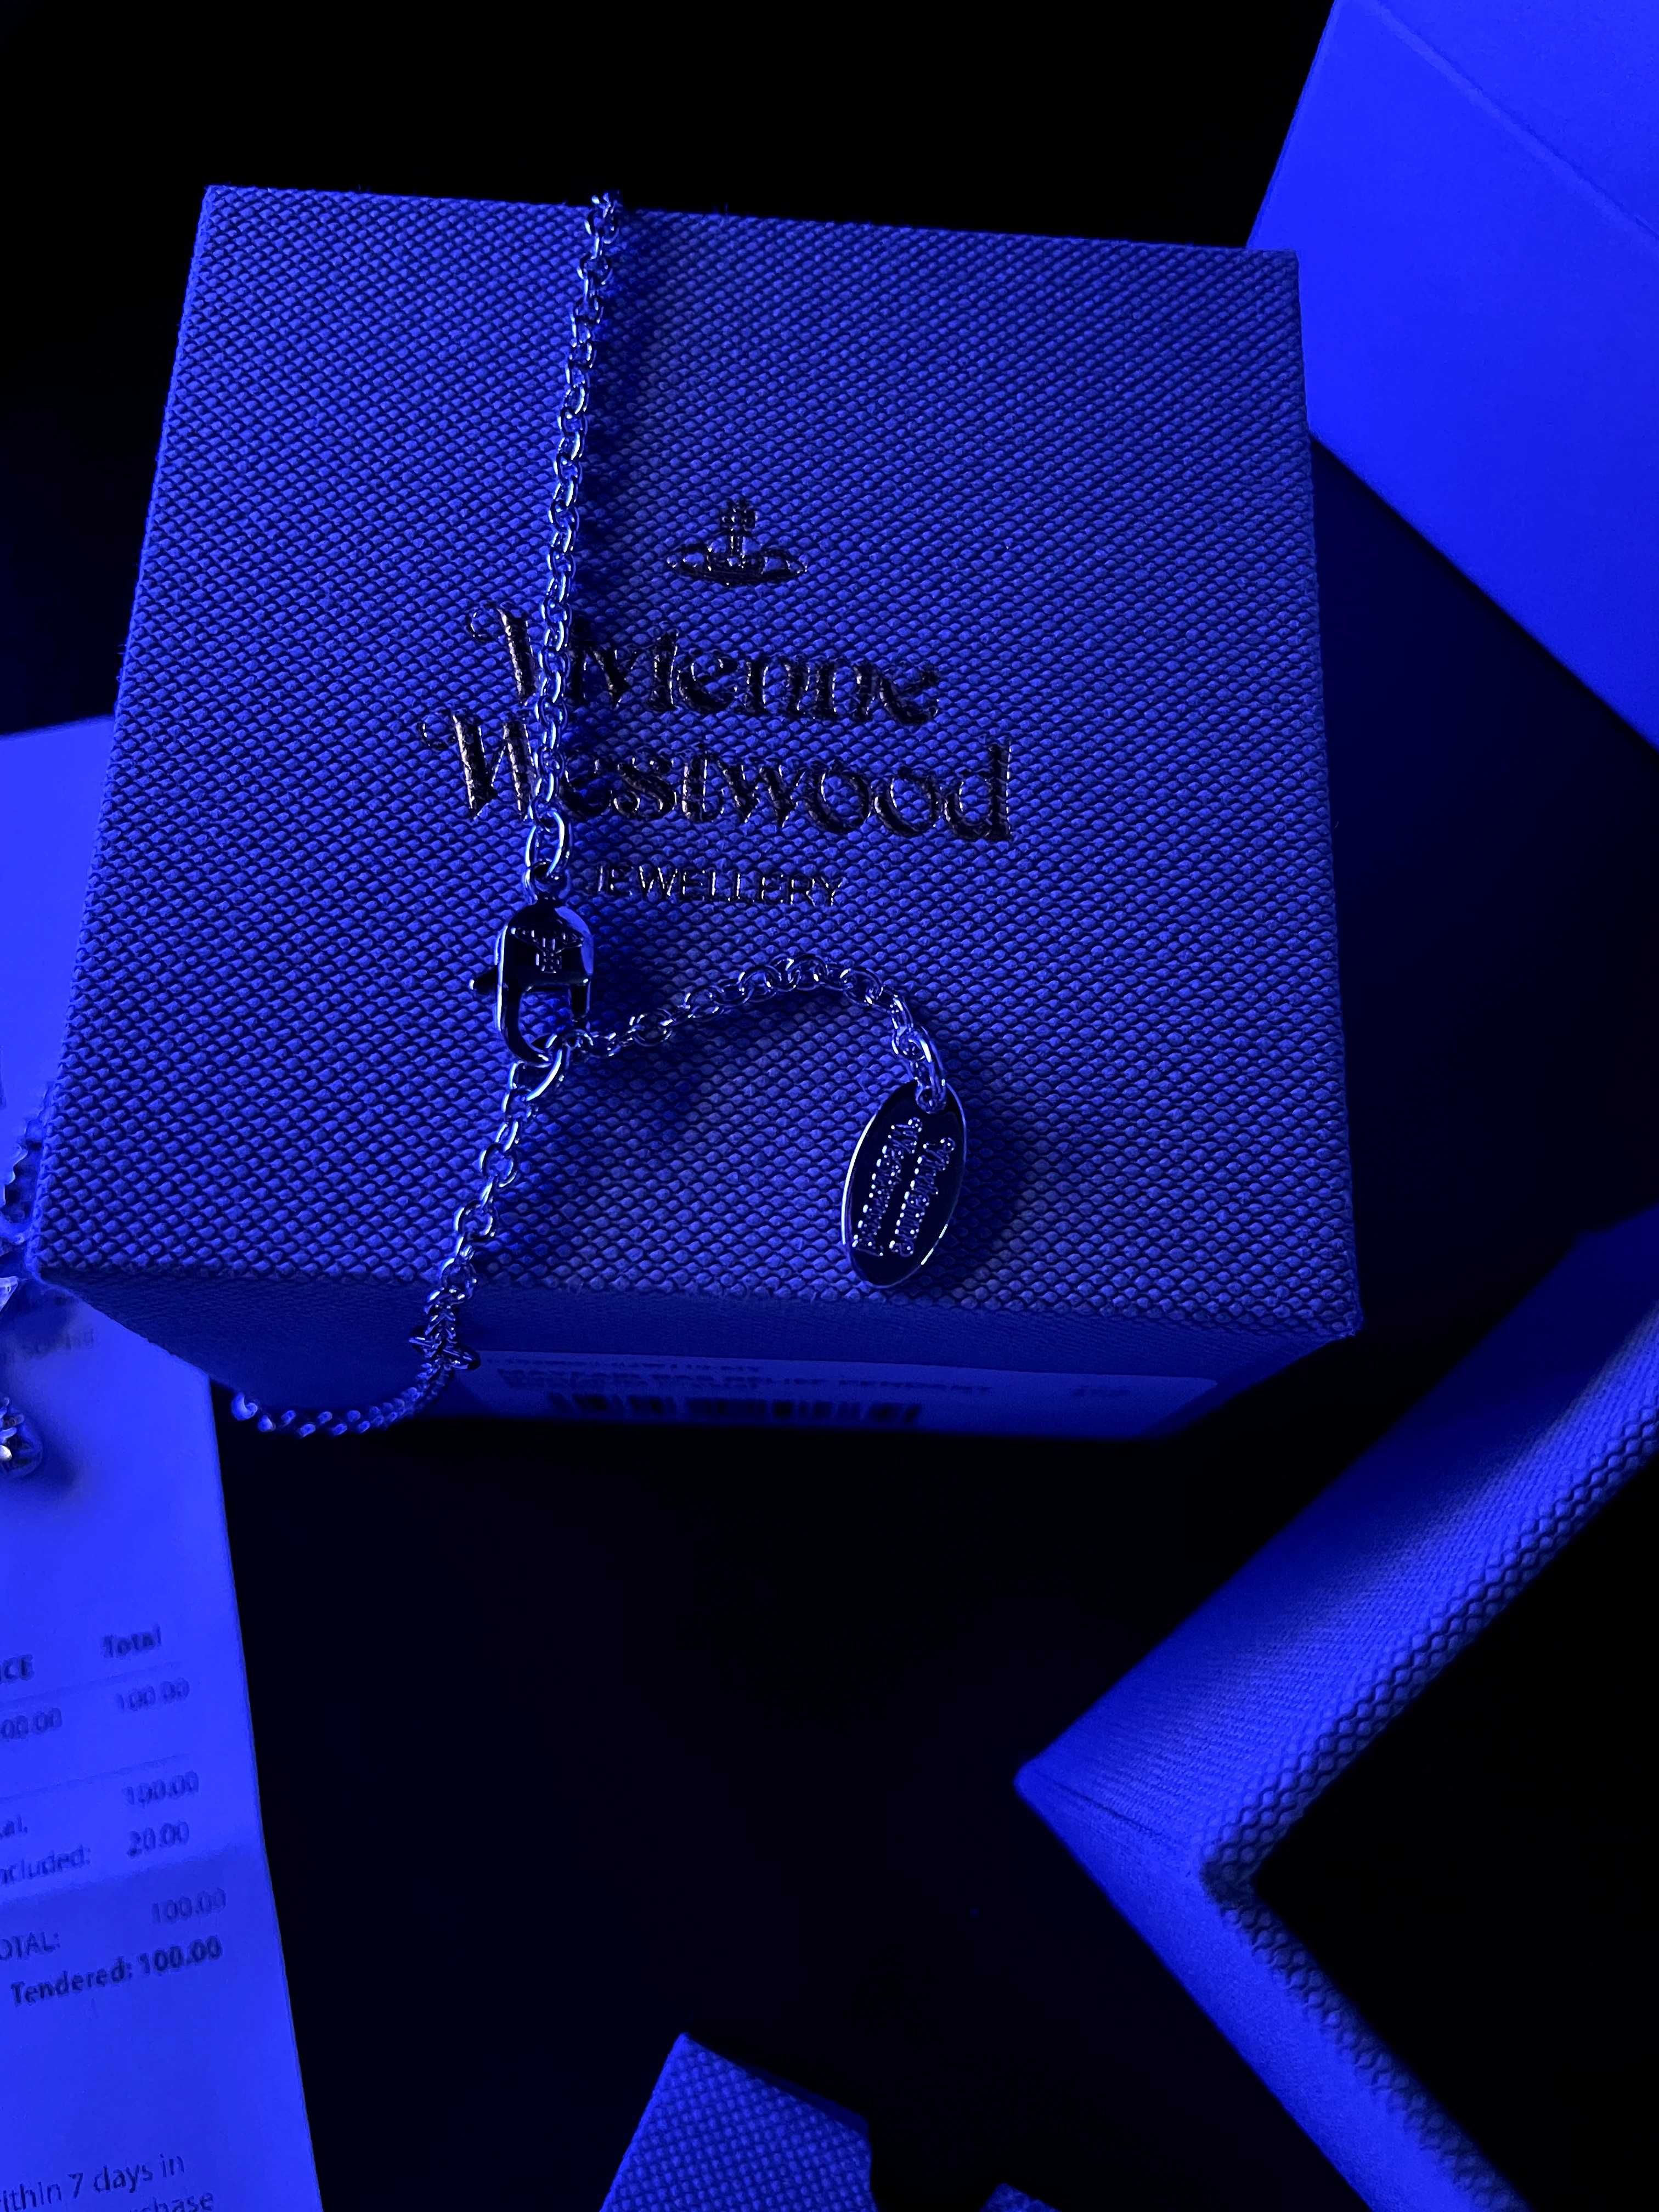 Є ЧЕК! Vivienne Westwood Mayfair Bas Relief ожерелье Подвеска сережки